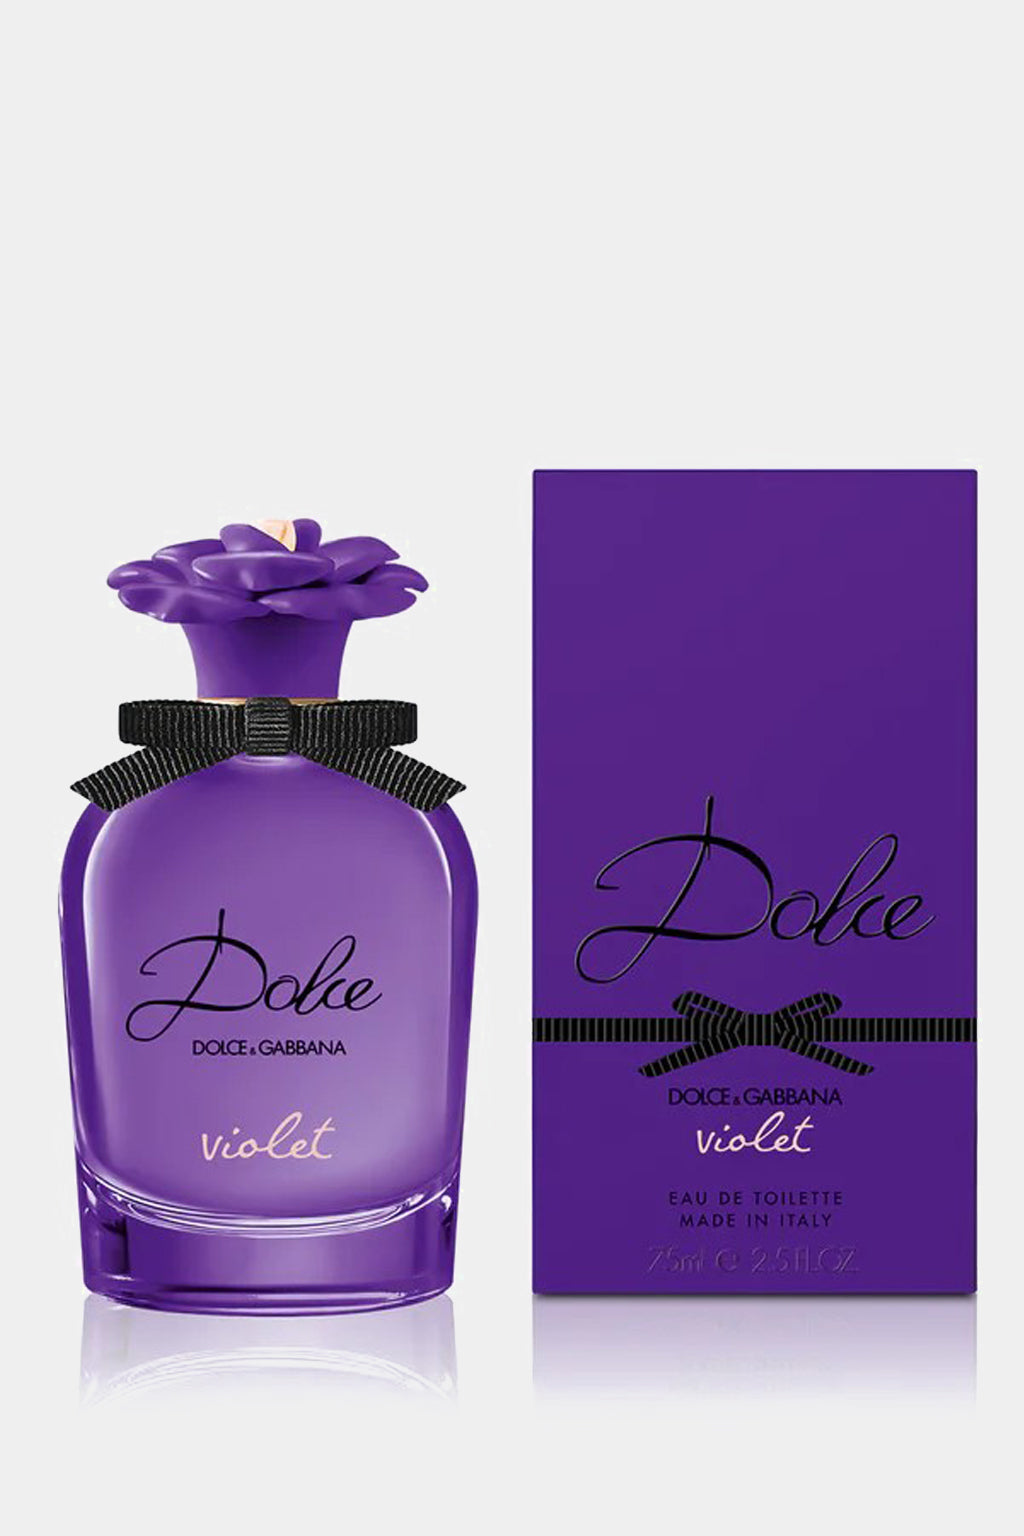 Dolce & Gabbana - Dolce Violet Eau de Toilette